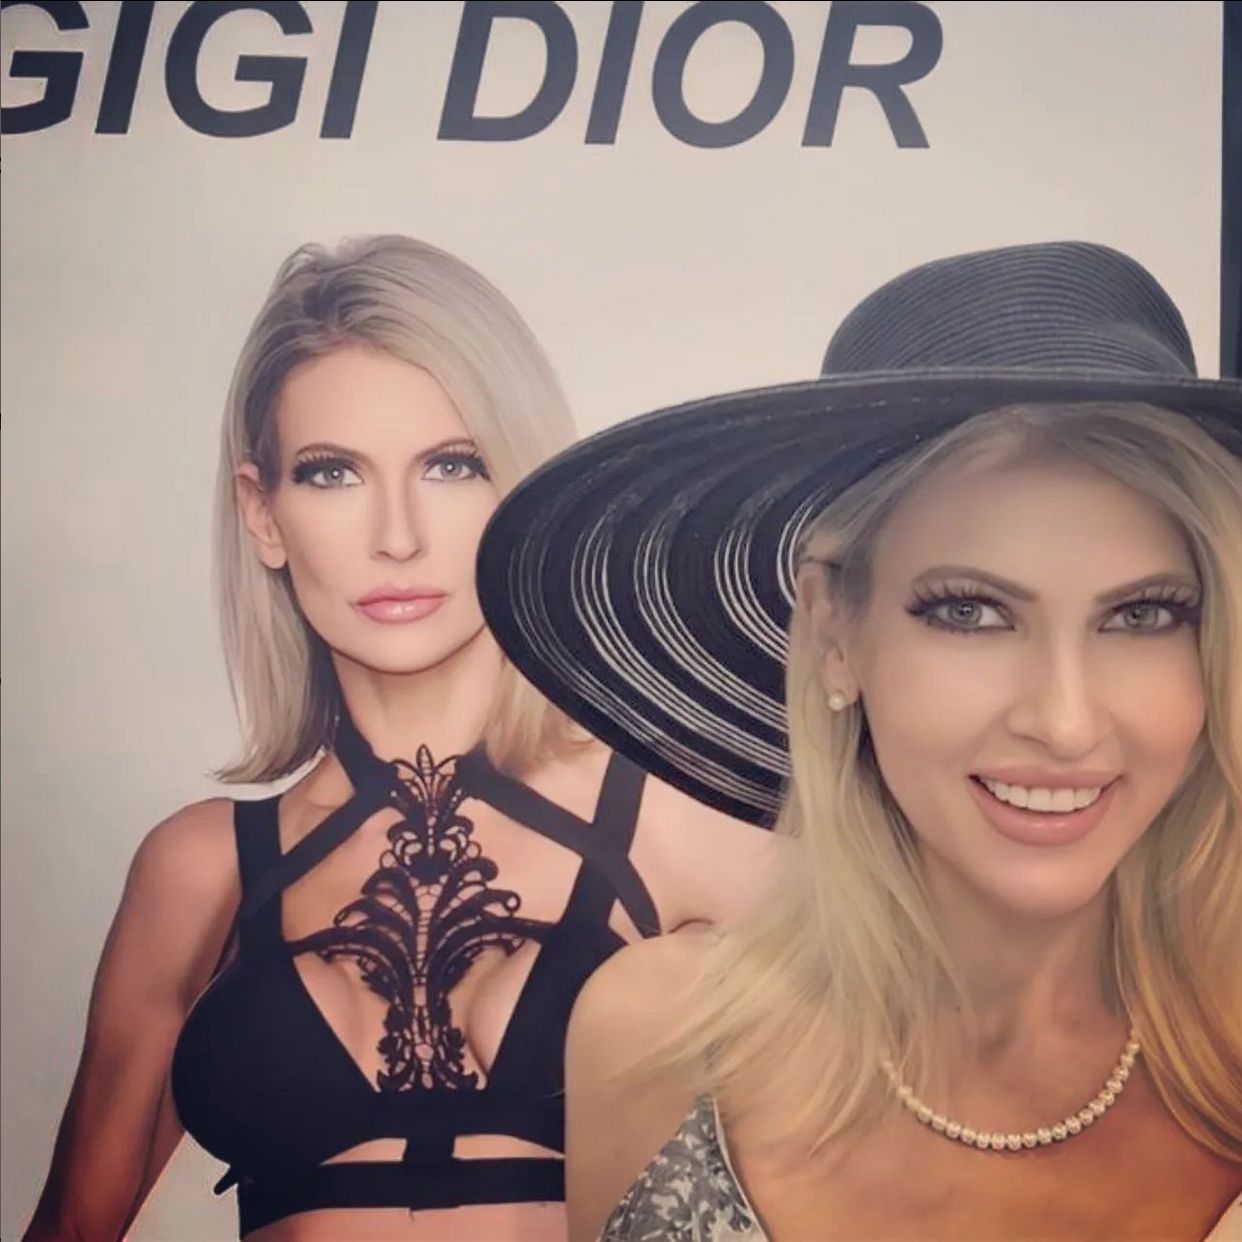 Gigi Dior